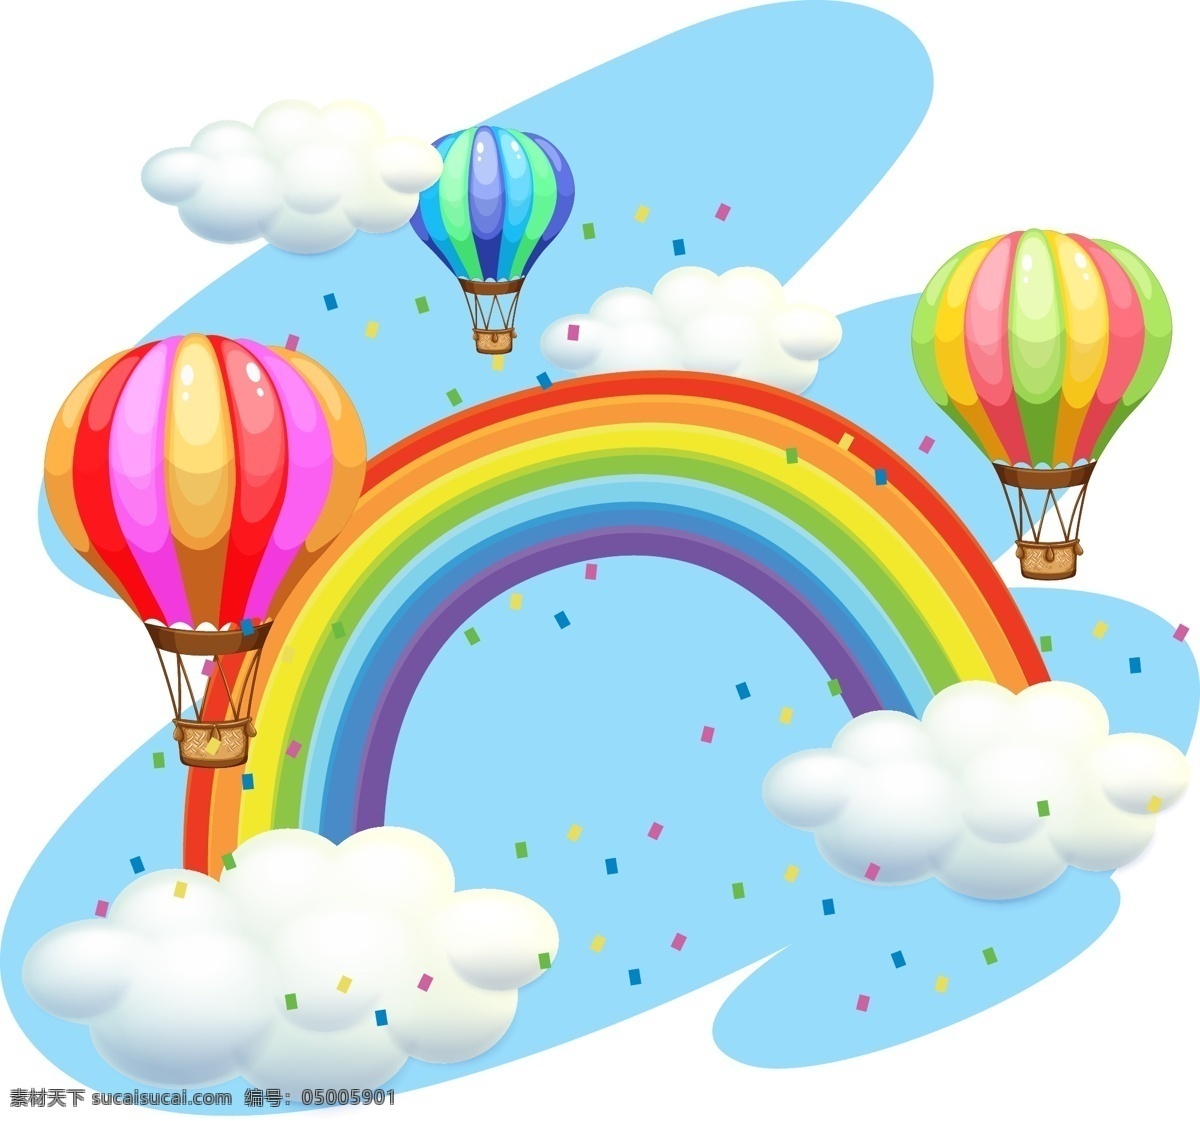 氢气球 矢量彩虹 卡通彩虹 手绘彩虹 彩虹插画 矢量氢气球 卡通氢气球 手绘氢气球 氢气球插画 白云 云朵 矢量云朵 卡通云朵 手绘云朵 云朵插画 气球 生活百科 休闲娱乐